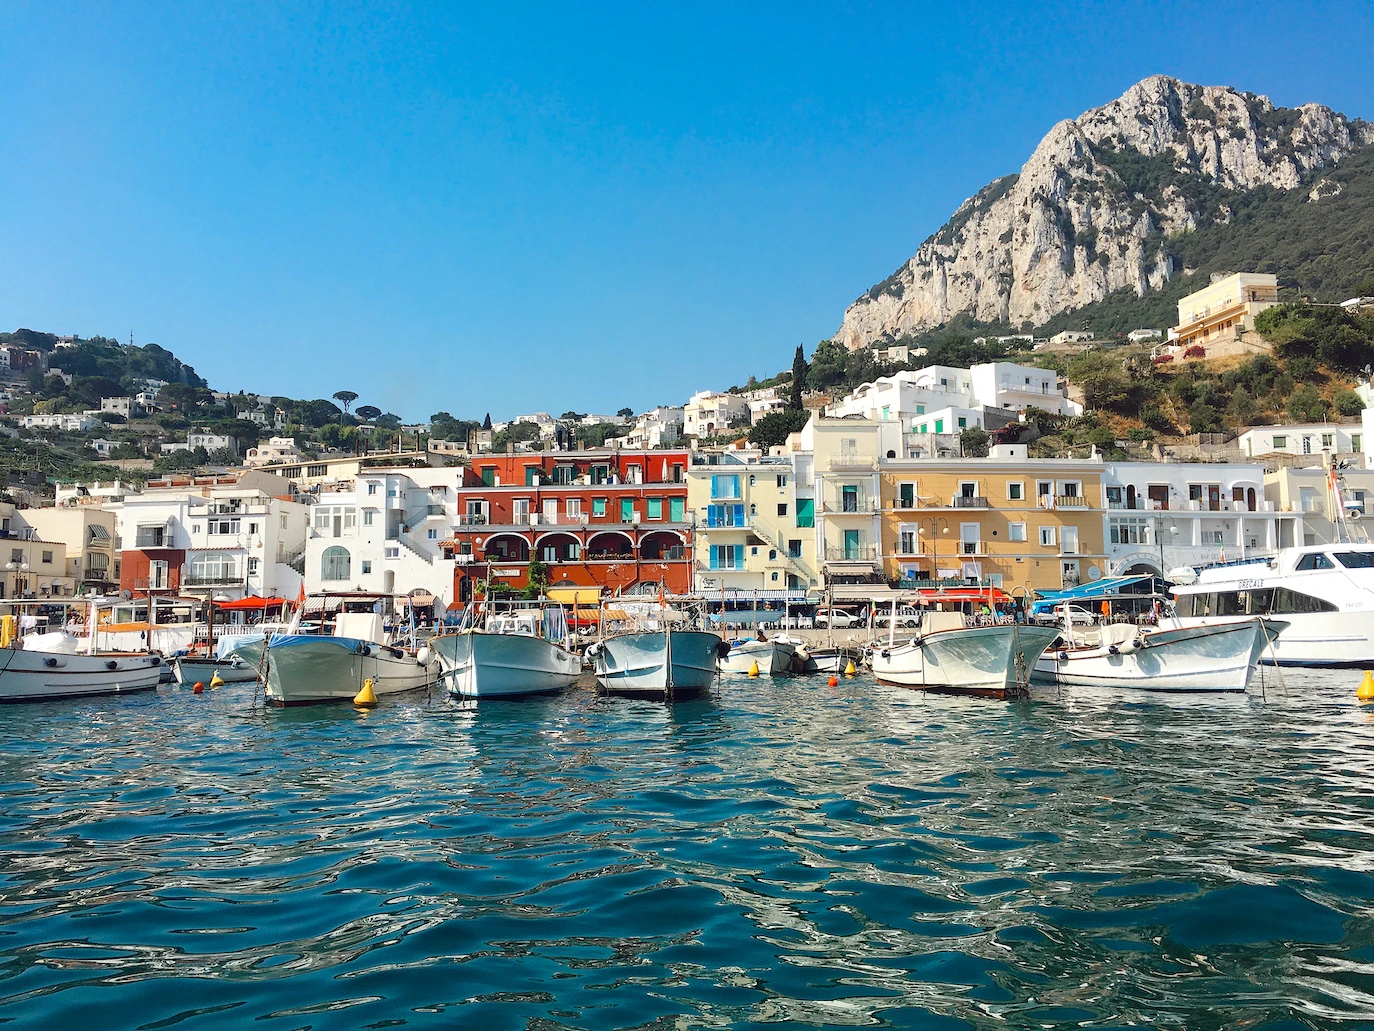 Välkommen till Capri – En pärla i Medelhavet